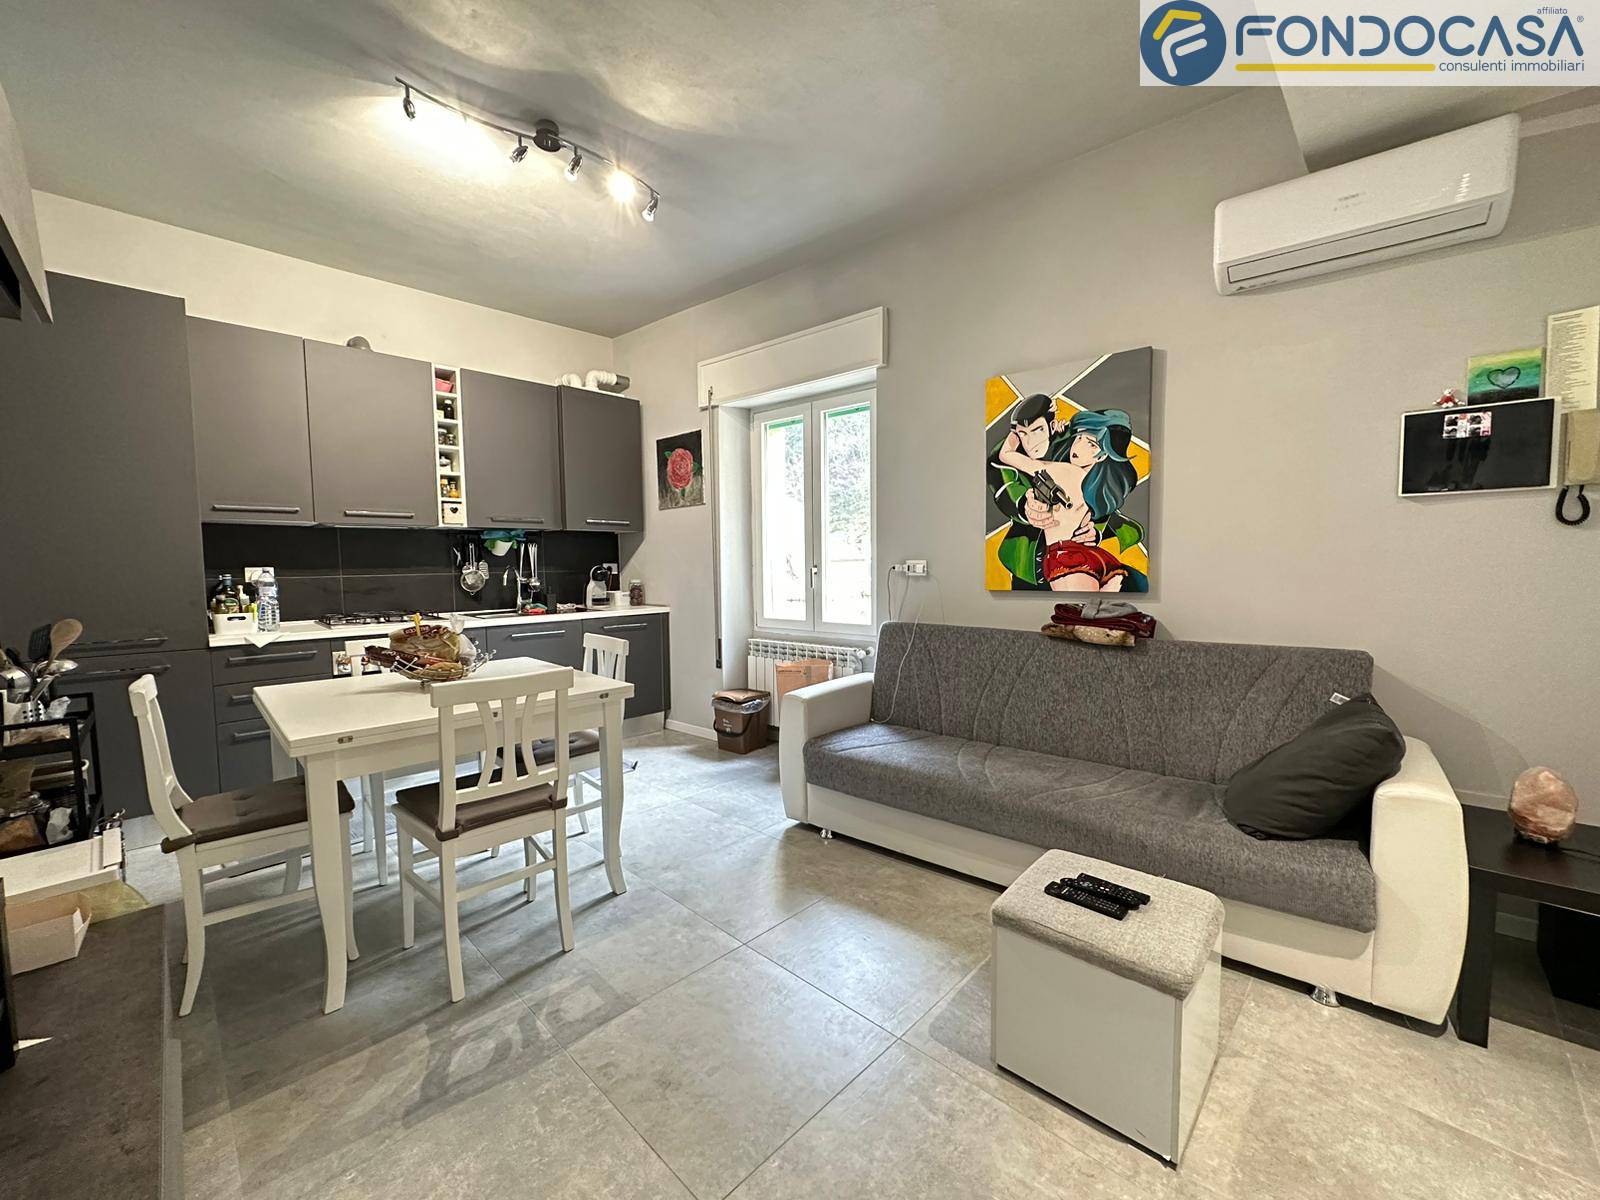 Appartamento in vendita a Seravezza, 3 locali, prezzo € 170.000 | PortaleAgenzieImmobiliari.it